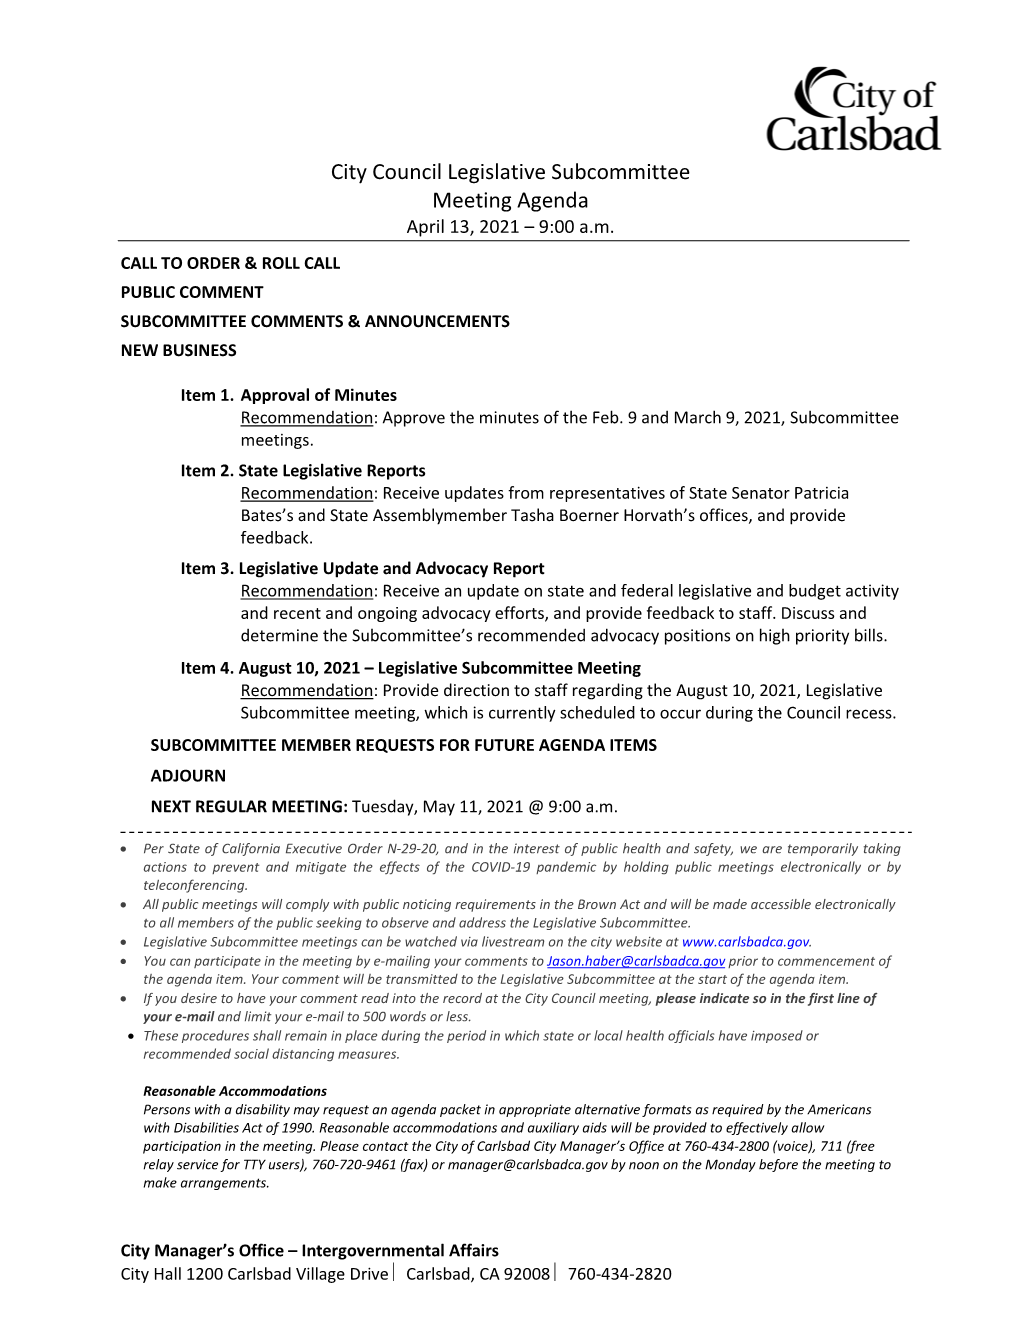 City Council Legislative Subcommittee Meeting Agenda April 13, 2021 – 9:00 A.M